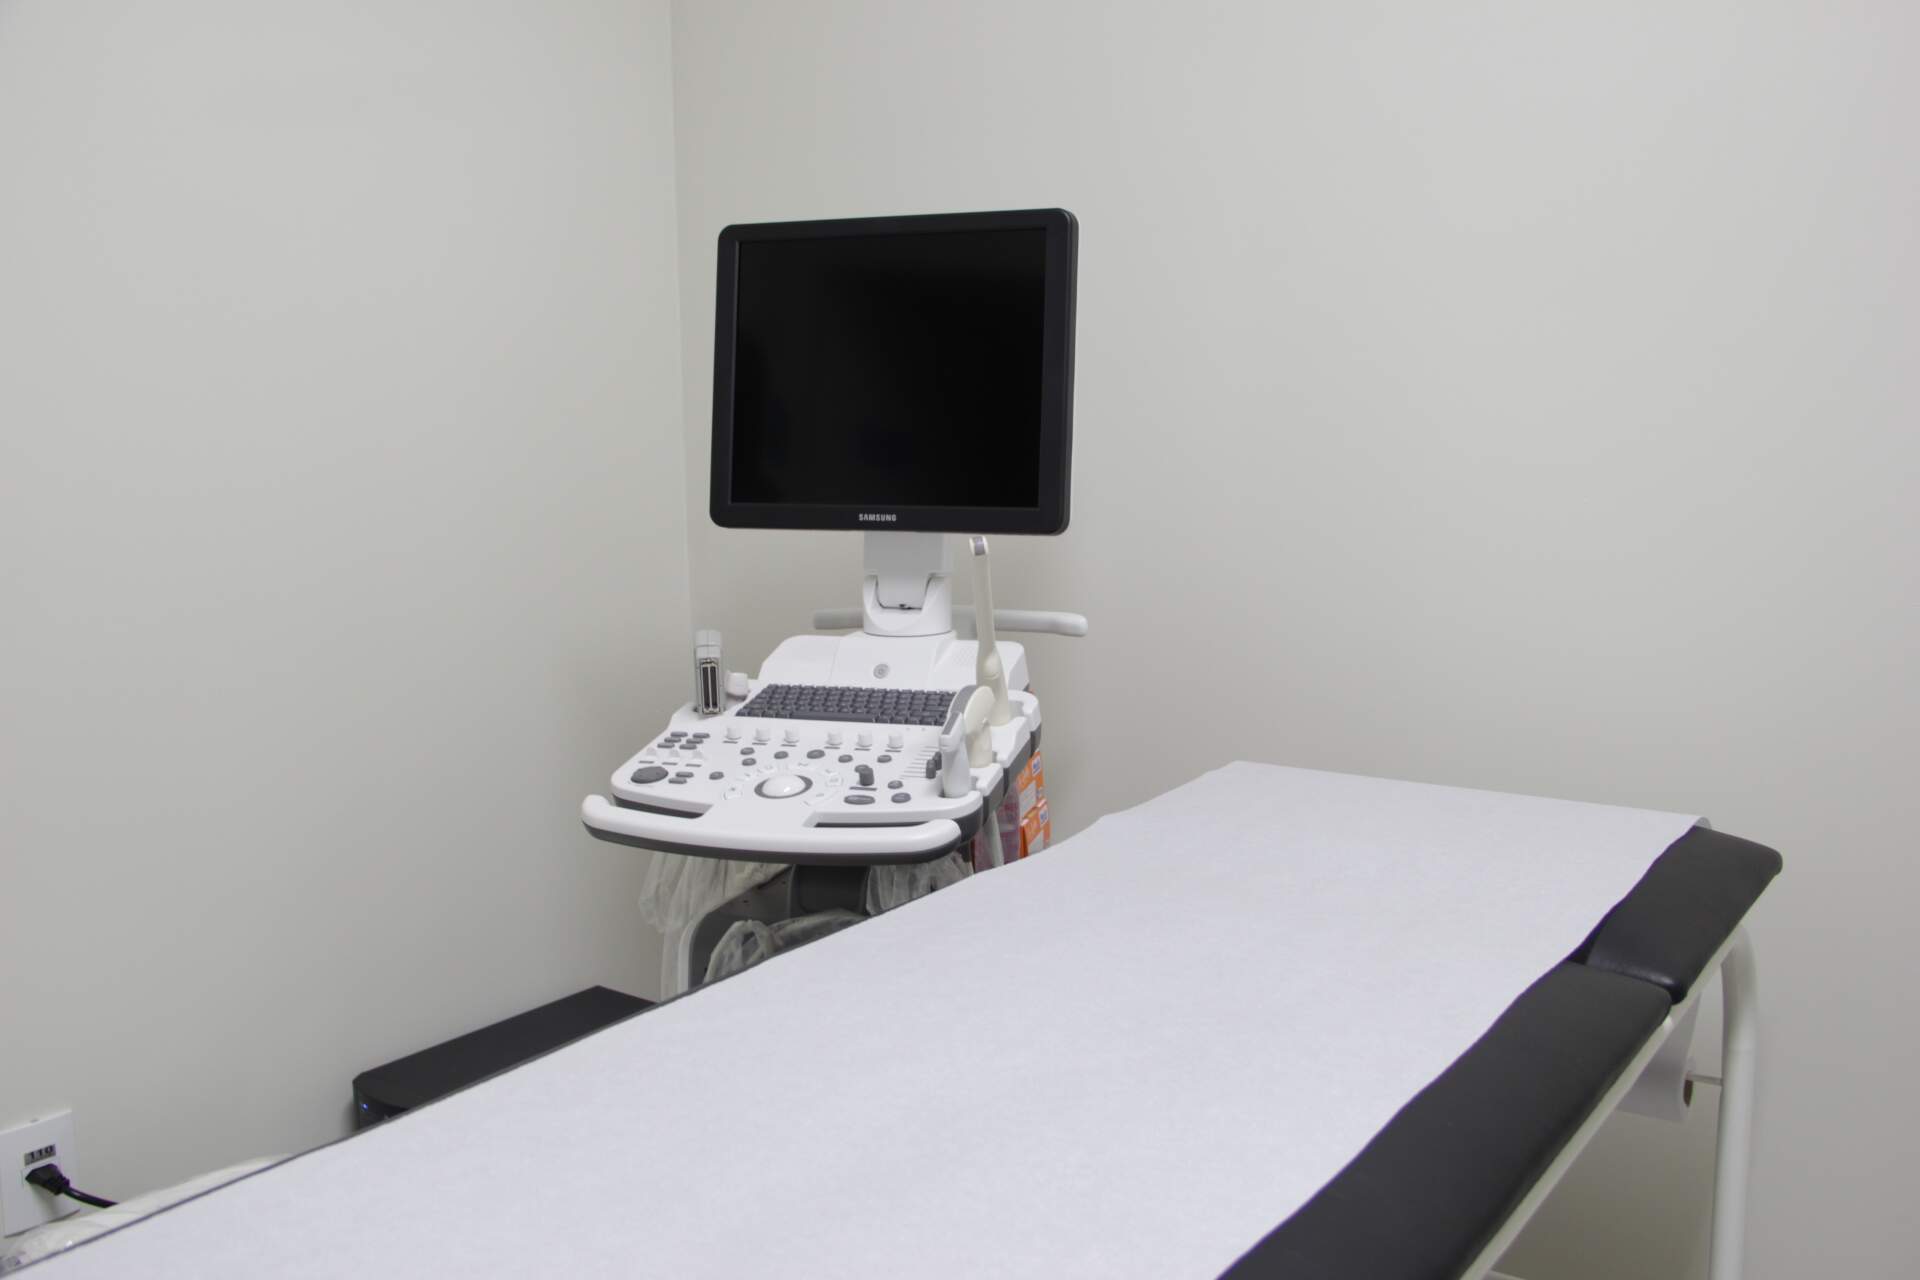 Laboratório de Treinamento em Ultrassonografia e Ecocardiografia